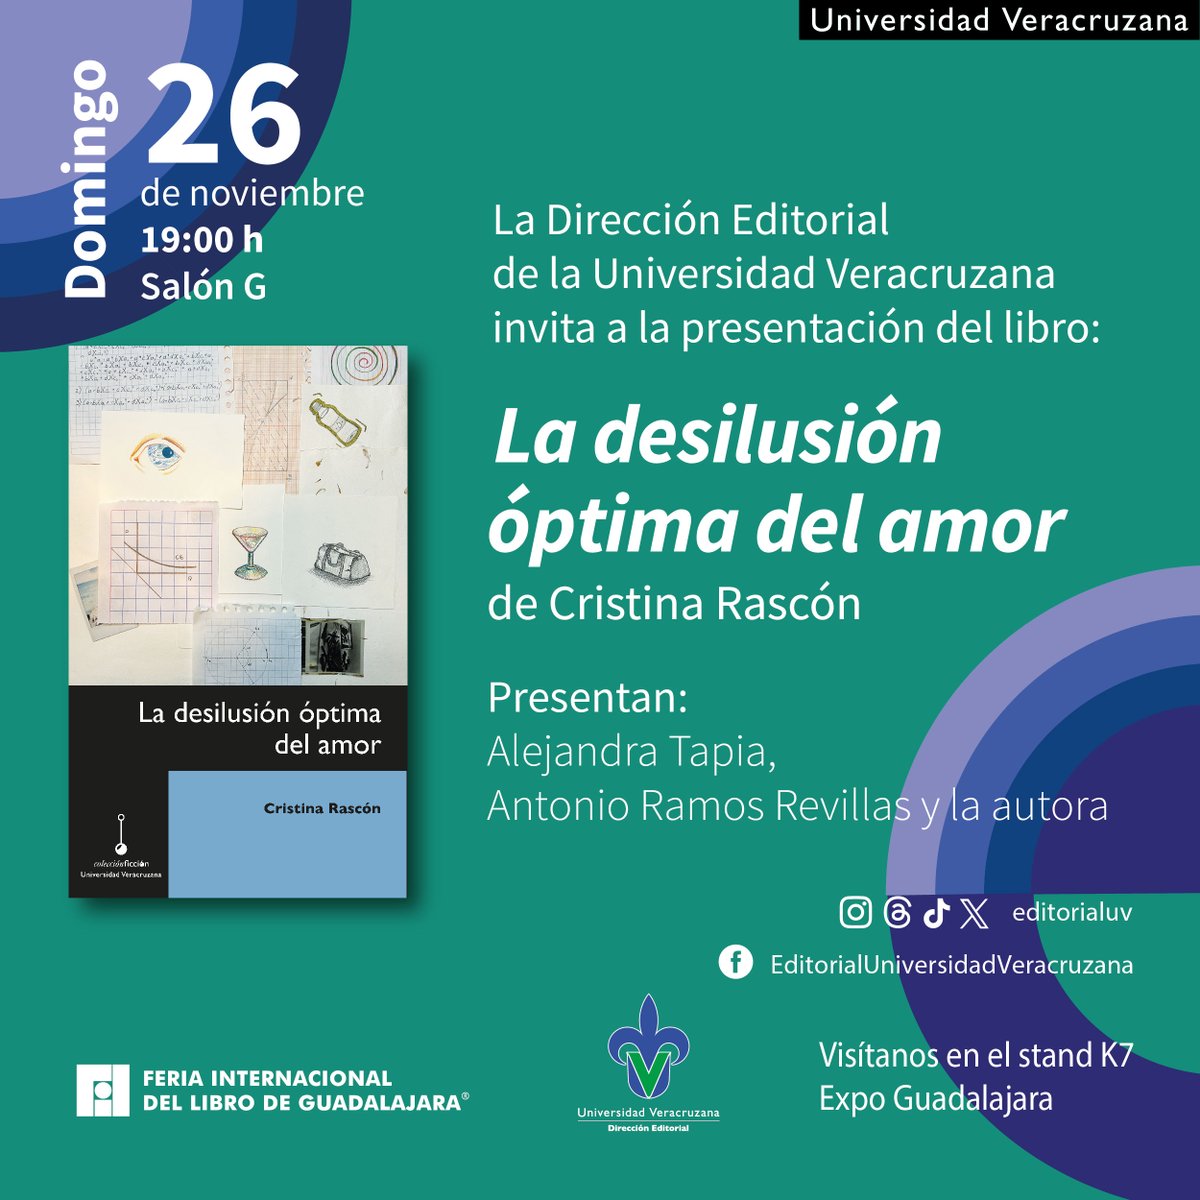 Hoy 𝗱𝗼𝗺𝗶𝗻𝗴𝗼 𝟮𝟲 𝗱𝗲 𝗻𝗼𝘃𝗶𝗲𝗺𝗯𝗿𝗲 realizaremos las siguientes presentaciones en @FILGuadalajara ⌚ 13:00 h 📗 El poder de las mujeres. ⌚ 17:00 h 📕 Cuaderno de un retorno al país natal ⌚ 19:00 📘 La desilusión óptima del amor #EditorialUV #SomosLectores